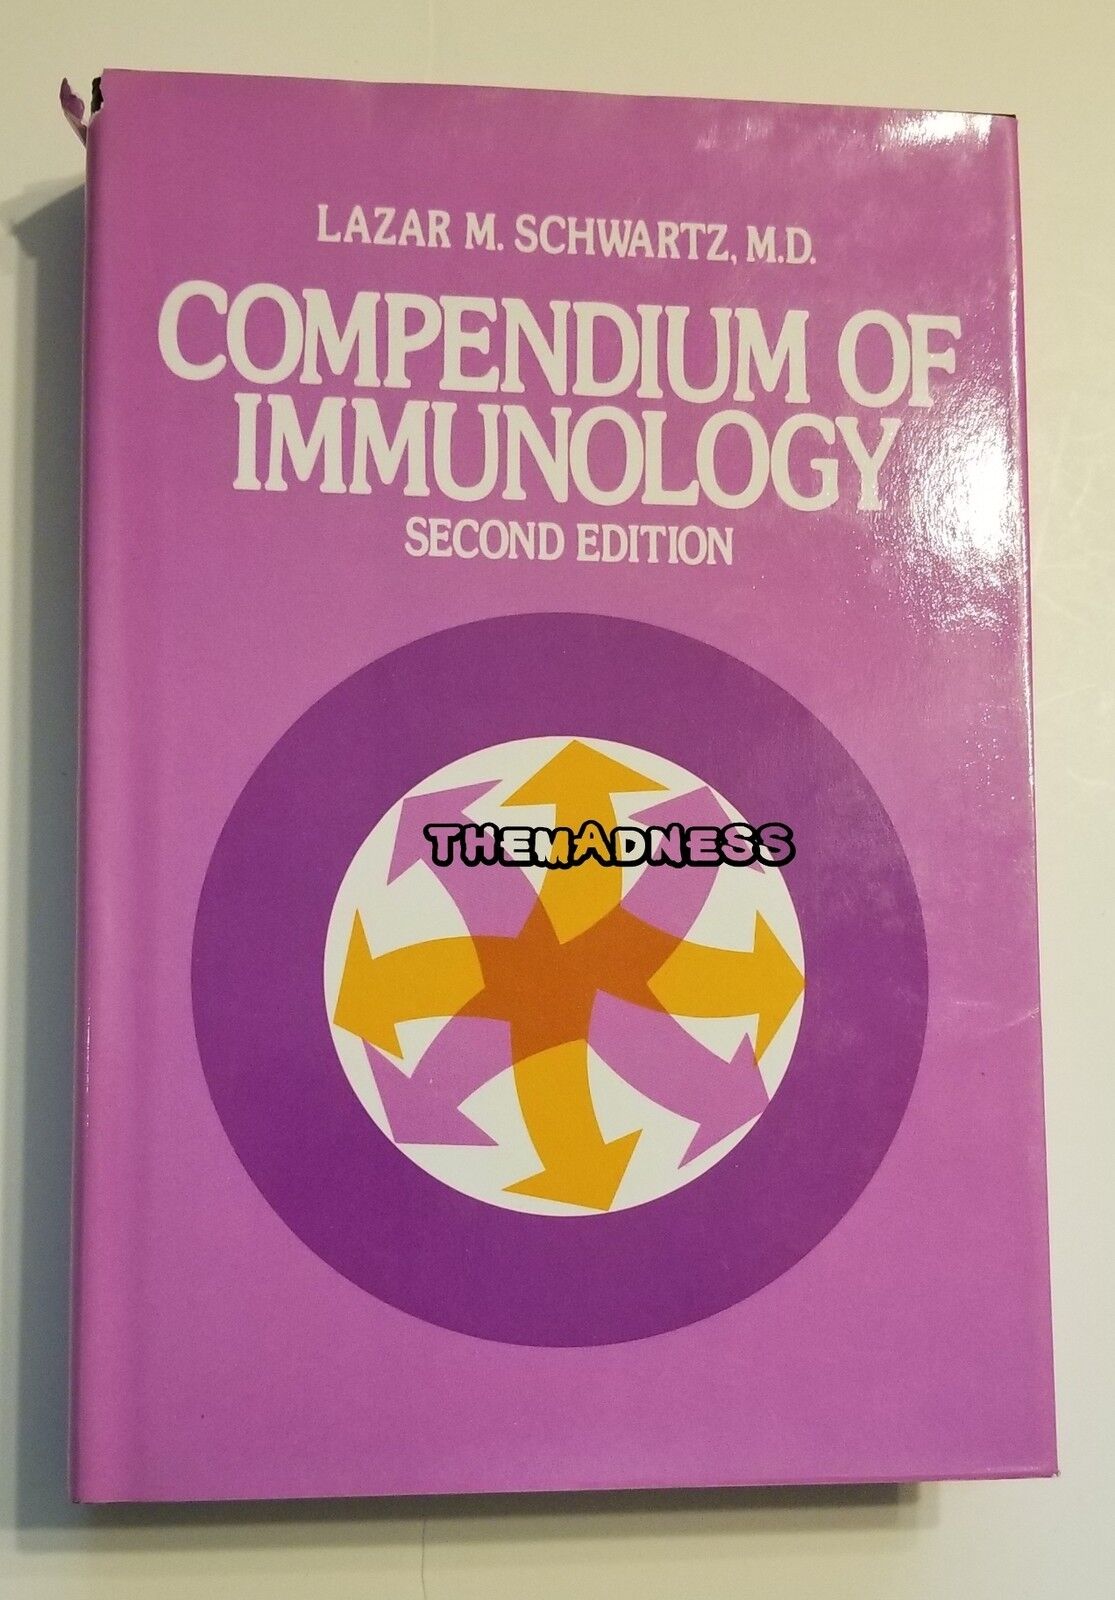 Compendium of Immunology : Lazar Schwartz Hardcover 1979 Textbook Medicine